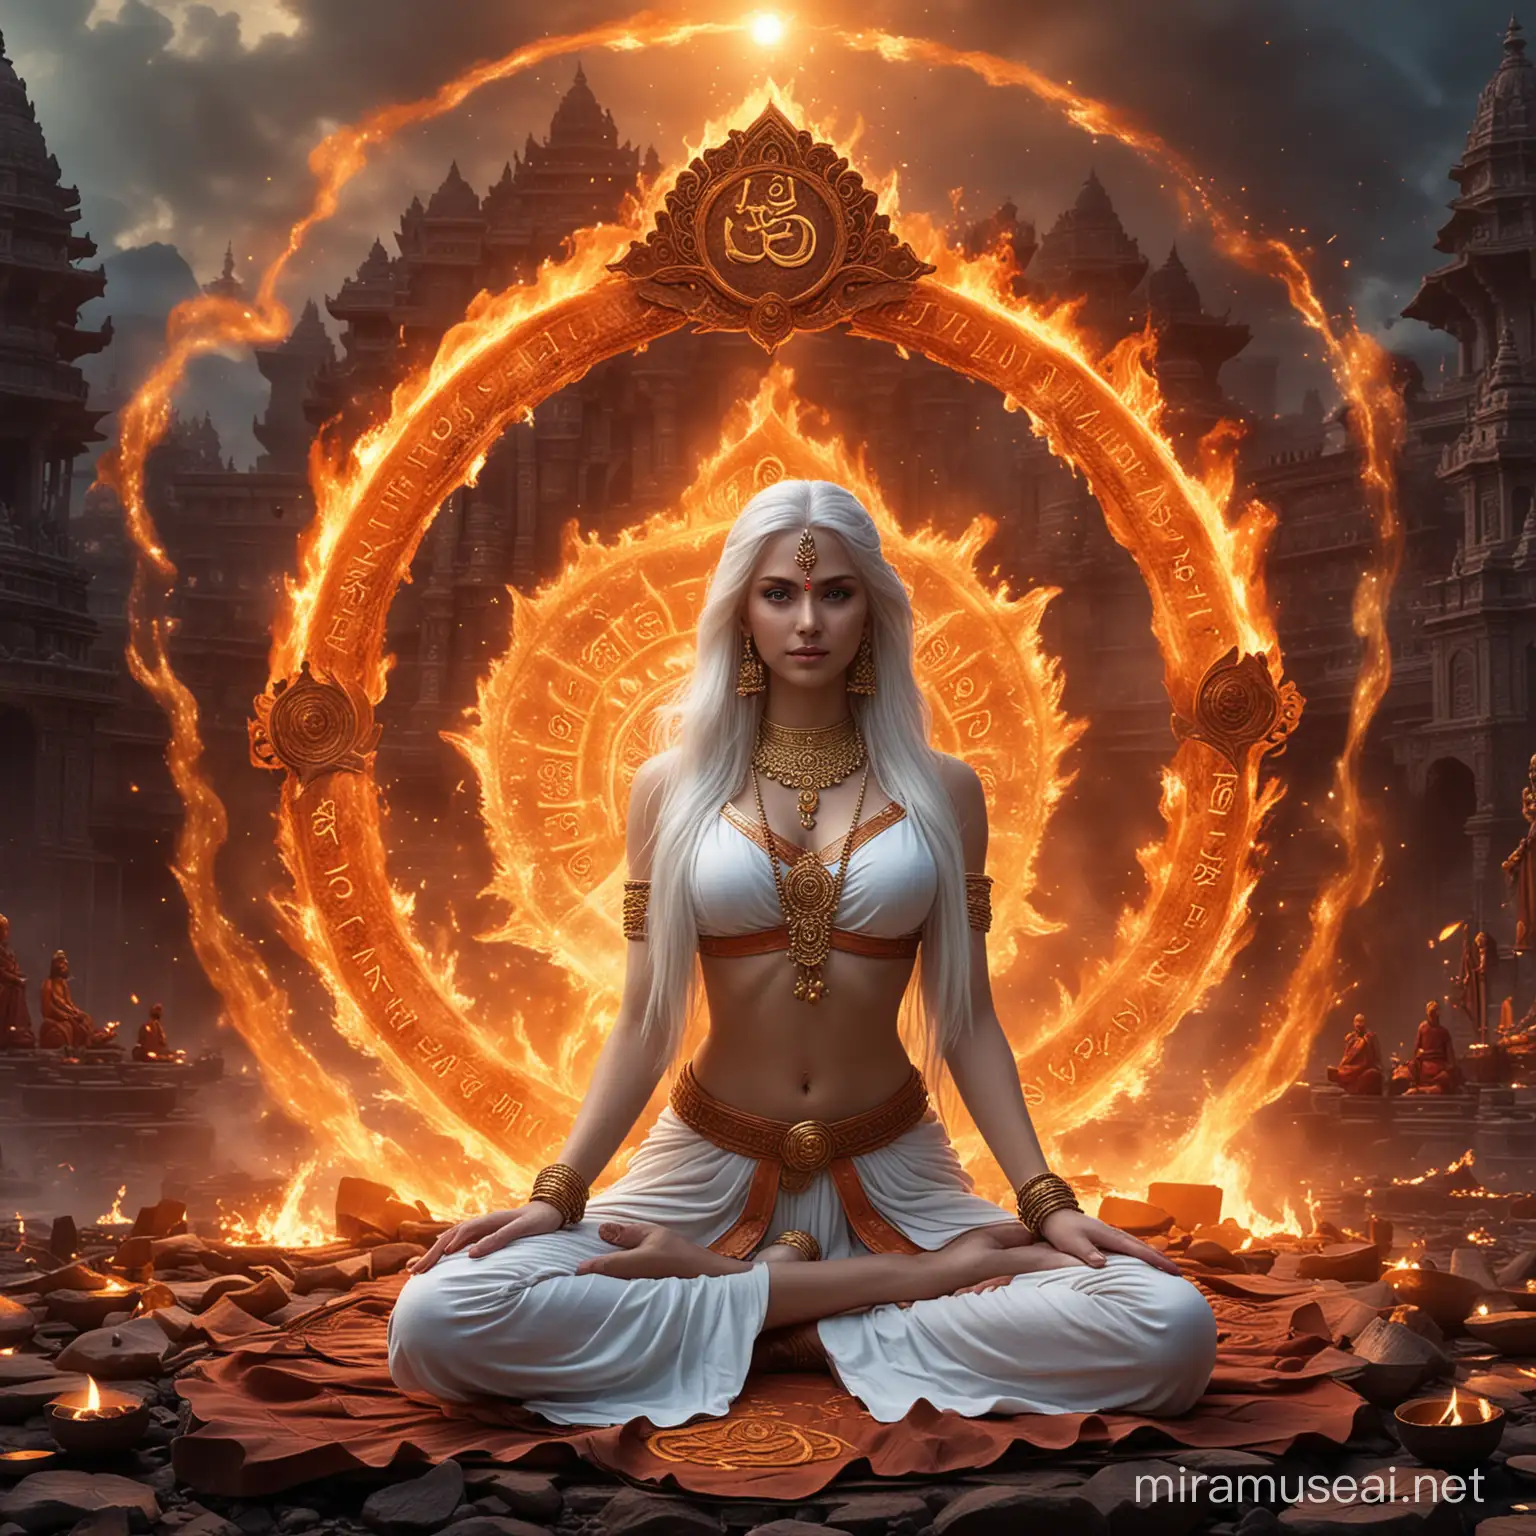 Mystical Hindu Empress in Combat Amidst Fiery Circle